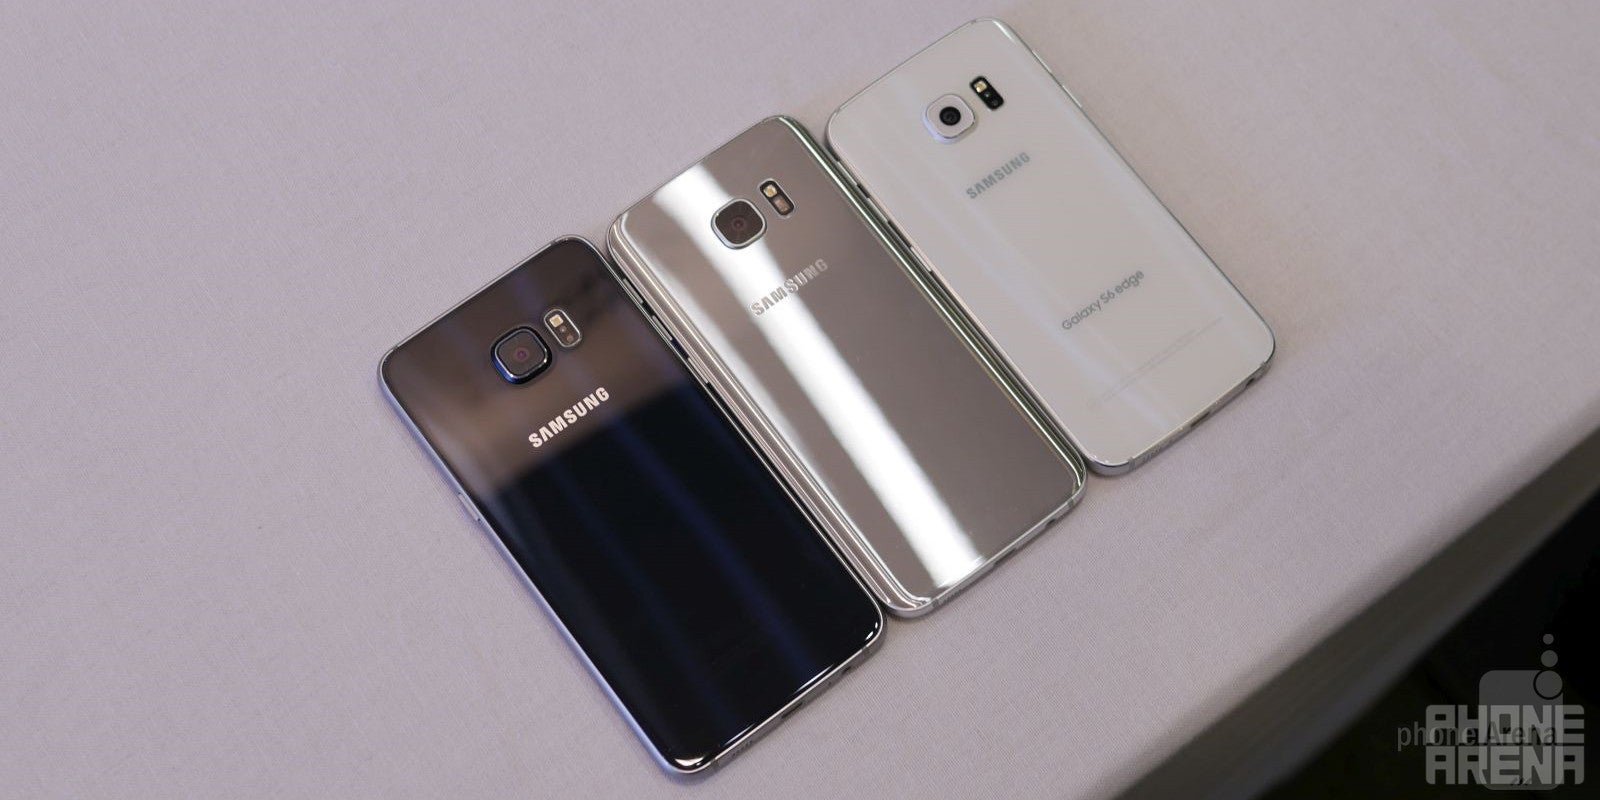 Samsung Galaxy S7 edge vs Samsung Galaxy S6 edge vs Samsung Galaxy S6 edge+: first look